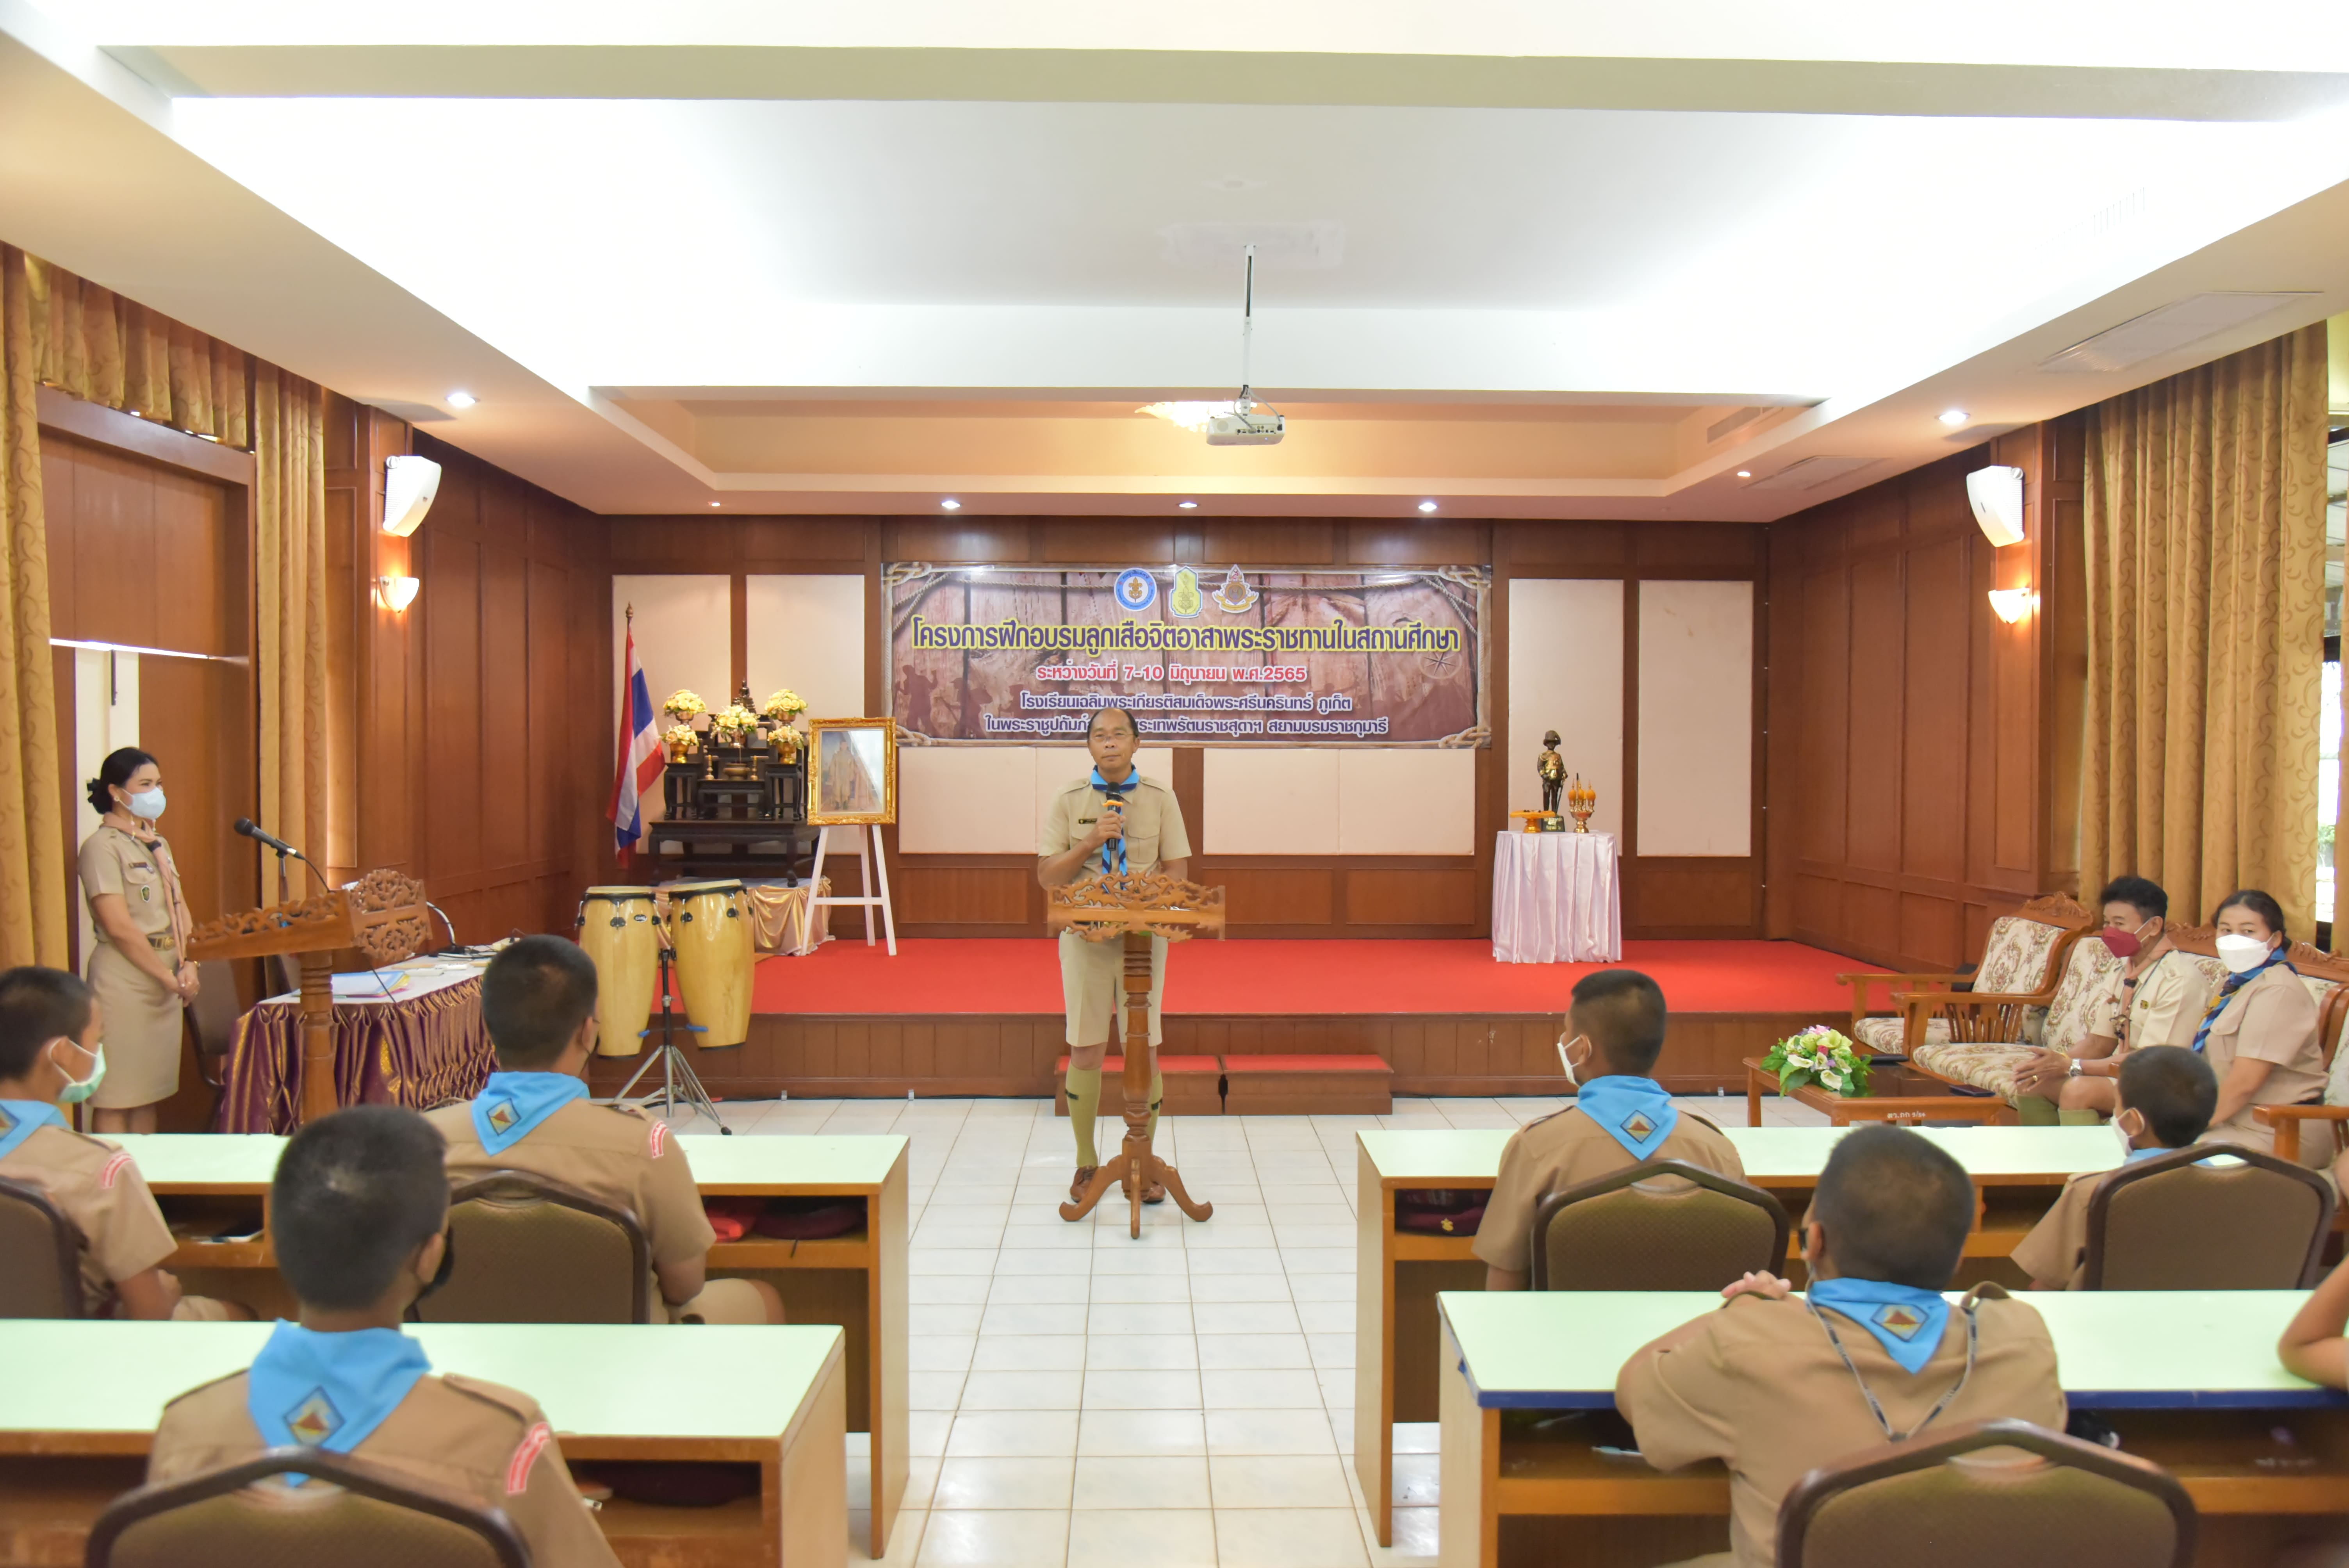 วันที่ 10 มิถุนายน 2565 นายมนตรี พรผล ผู้อำนวยการโรงเรียนเฉลิมพระเกียรติสมเด็จพระศรีนครินทร์ ภูเก็ต เป็นประธานพิธีปิดการอบรมโครงการลูกเสือจิตอาสาพระราชทานในสถานศึกษา